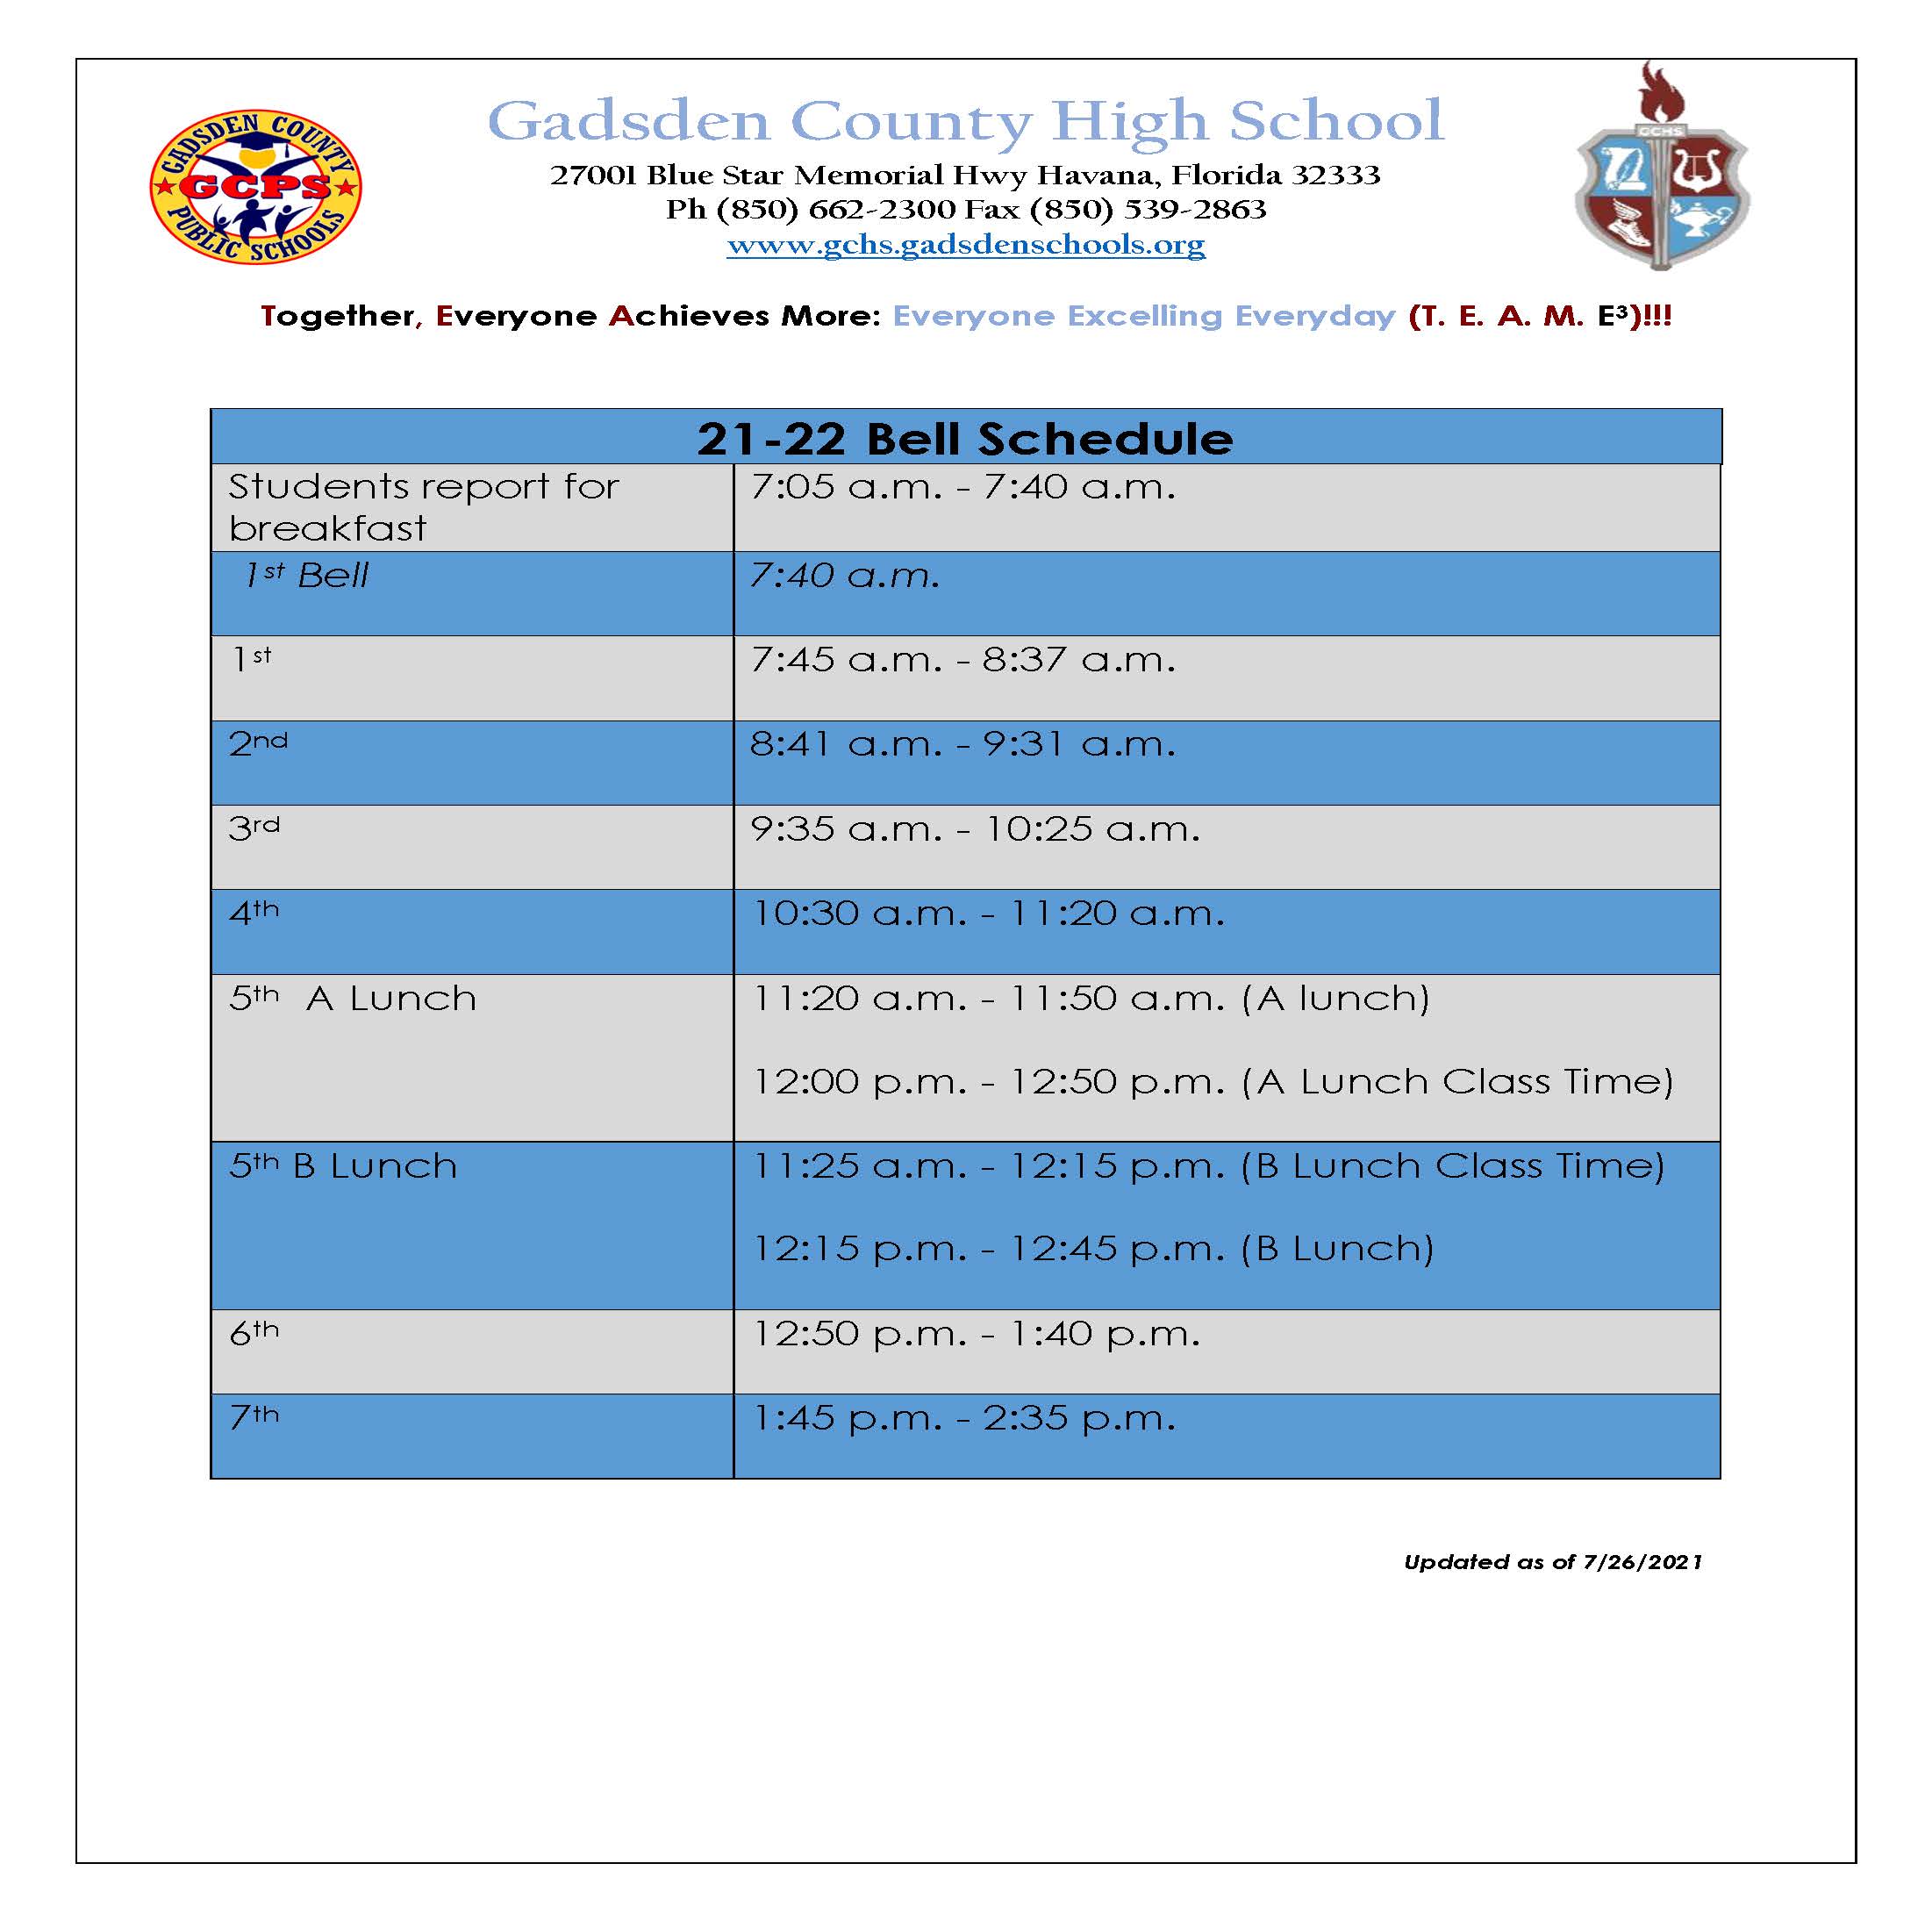 Gadsden County High School: Schedule